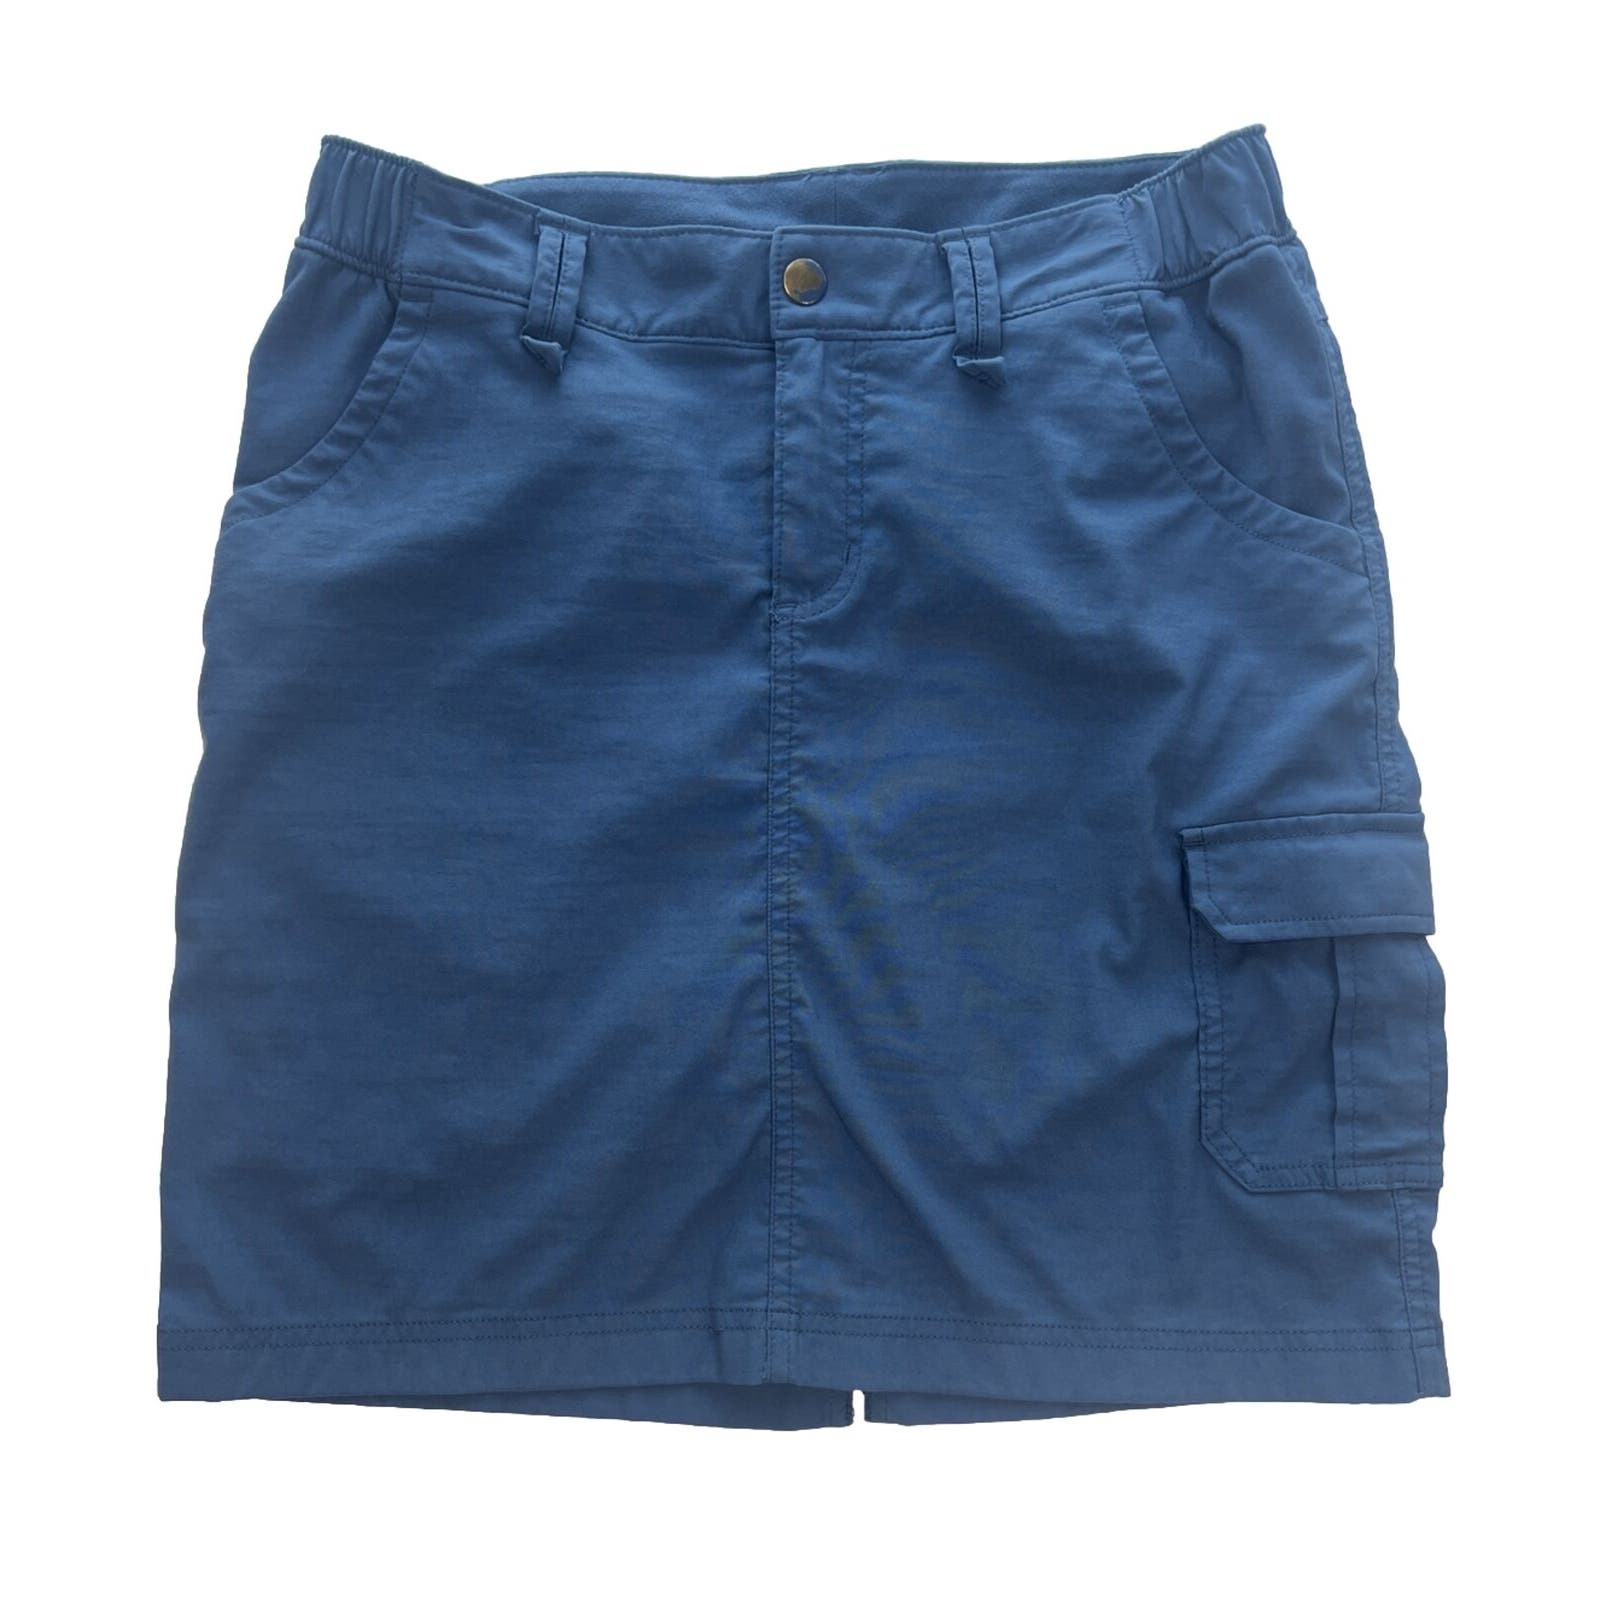 Duluth Trading Co. Cargo Skort Skirt Women’s Size 6 Nylon Outdoor Hiking Blue